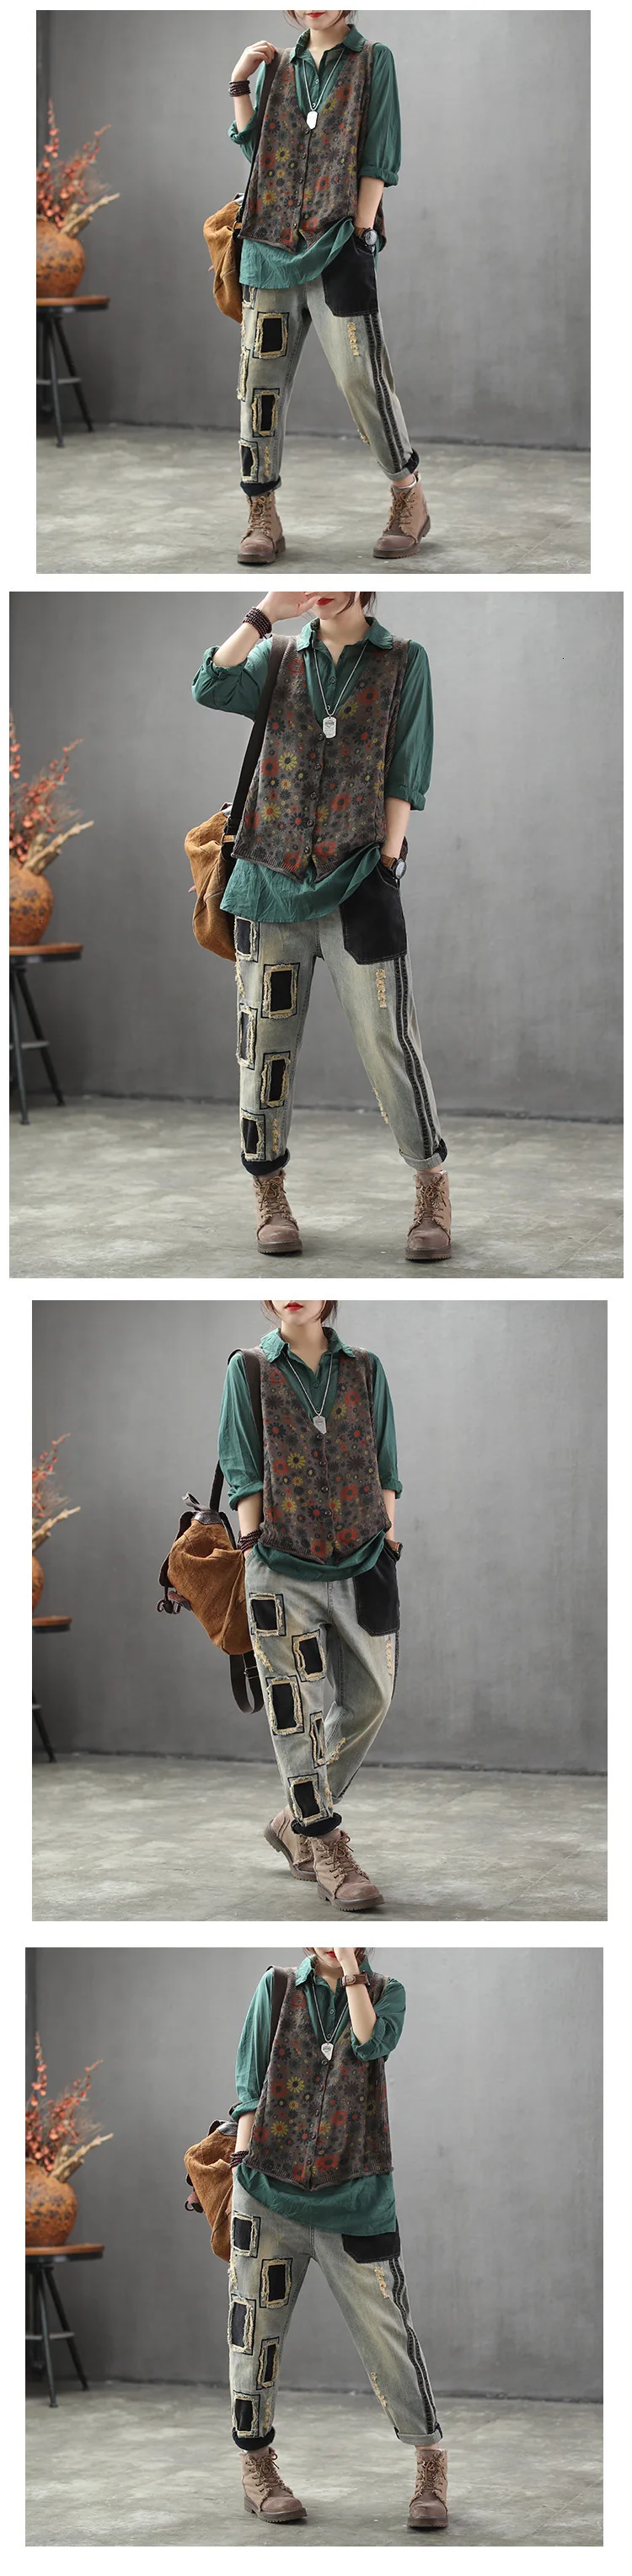 Max LuLu осенние модные корейские дизайнерские разорванный Гарем Брюки женские свободные панк дыры джинсы винтажные женские джинсовые брюки размера плюс